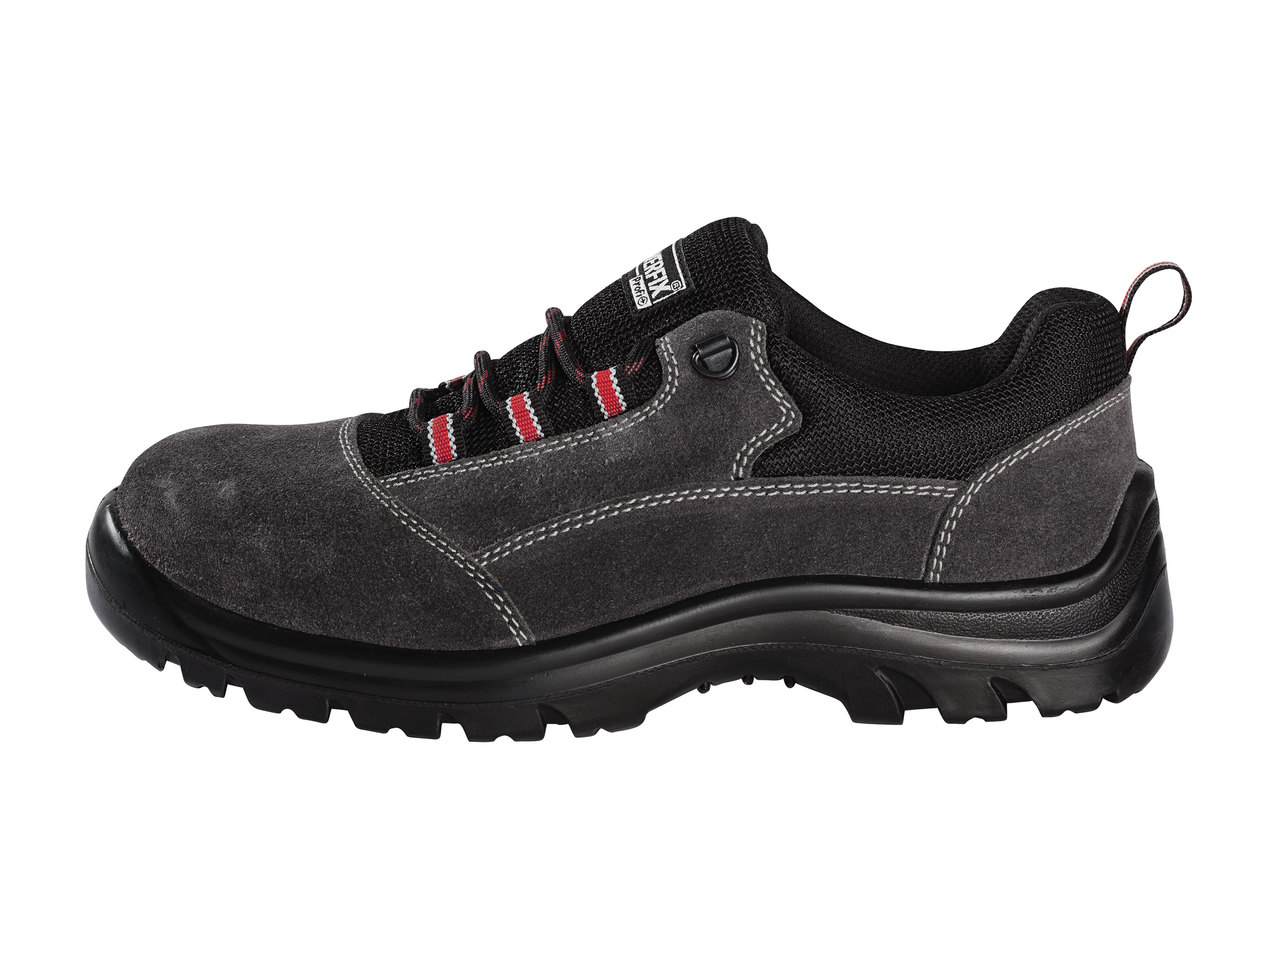 Powerfix Profi S3 Safety Shoes1